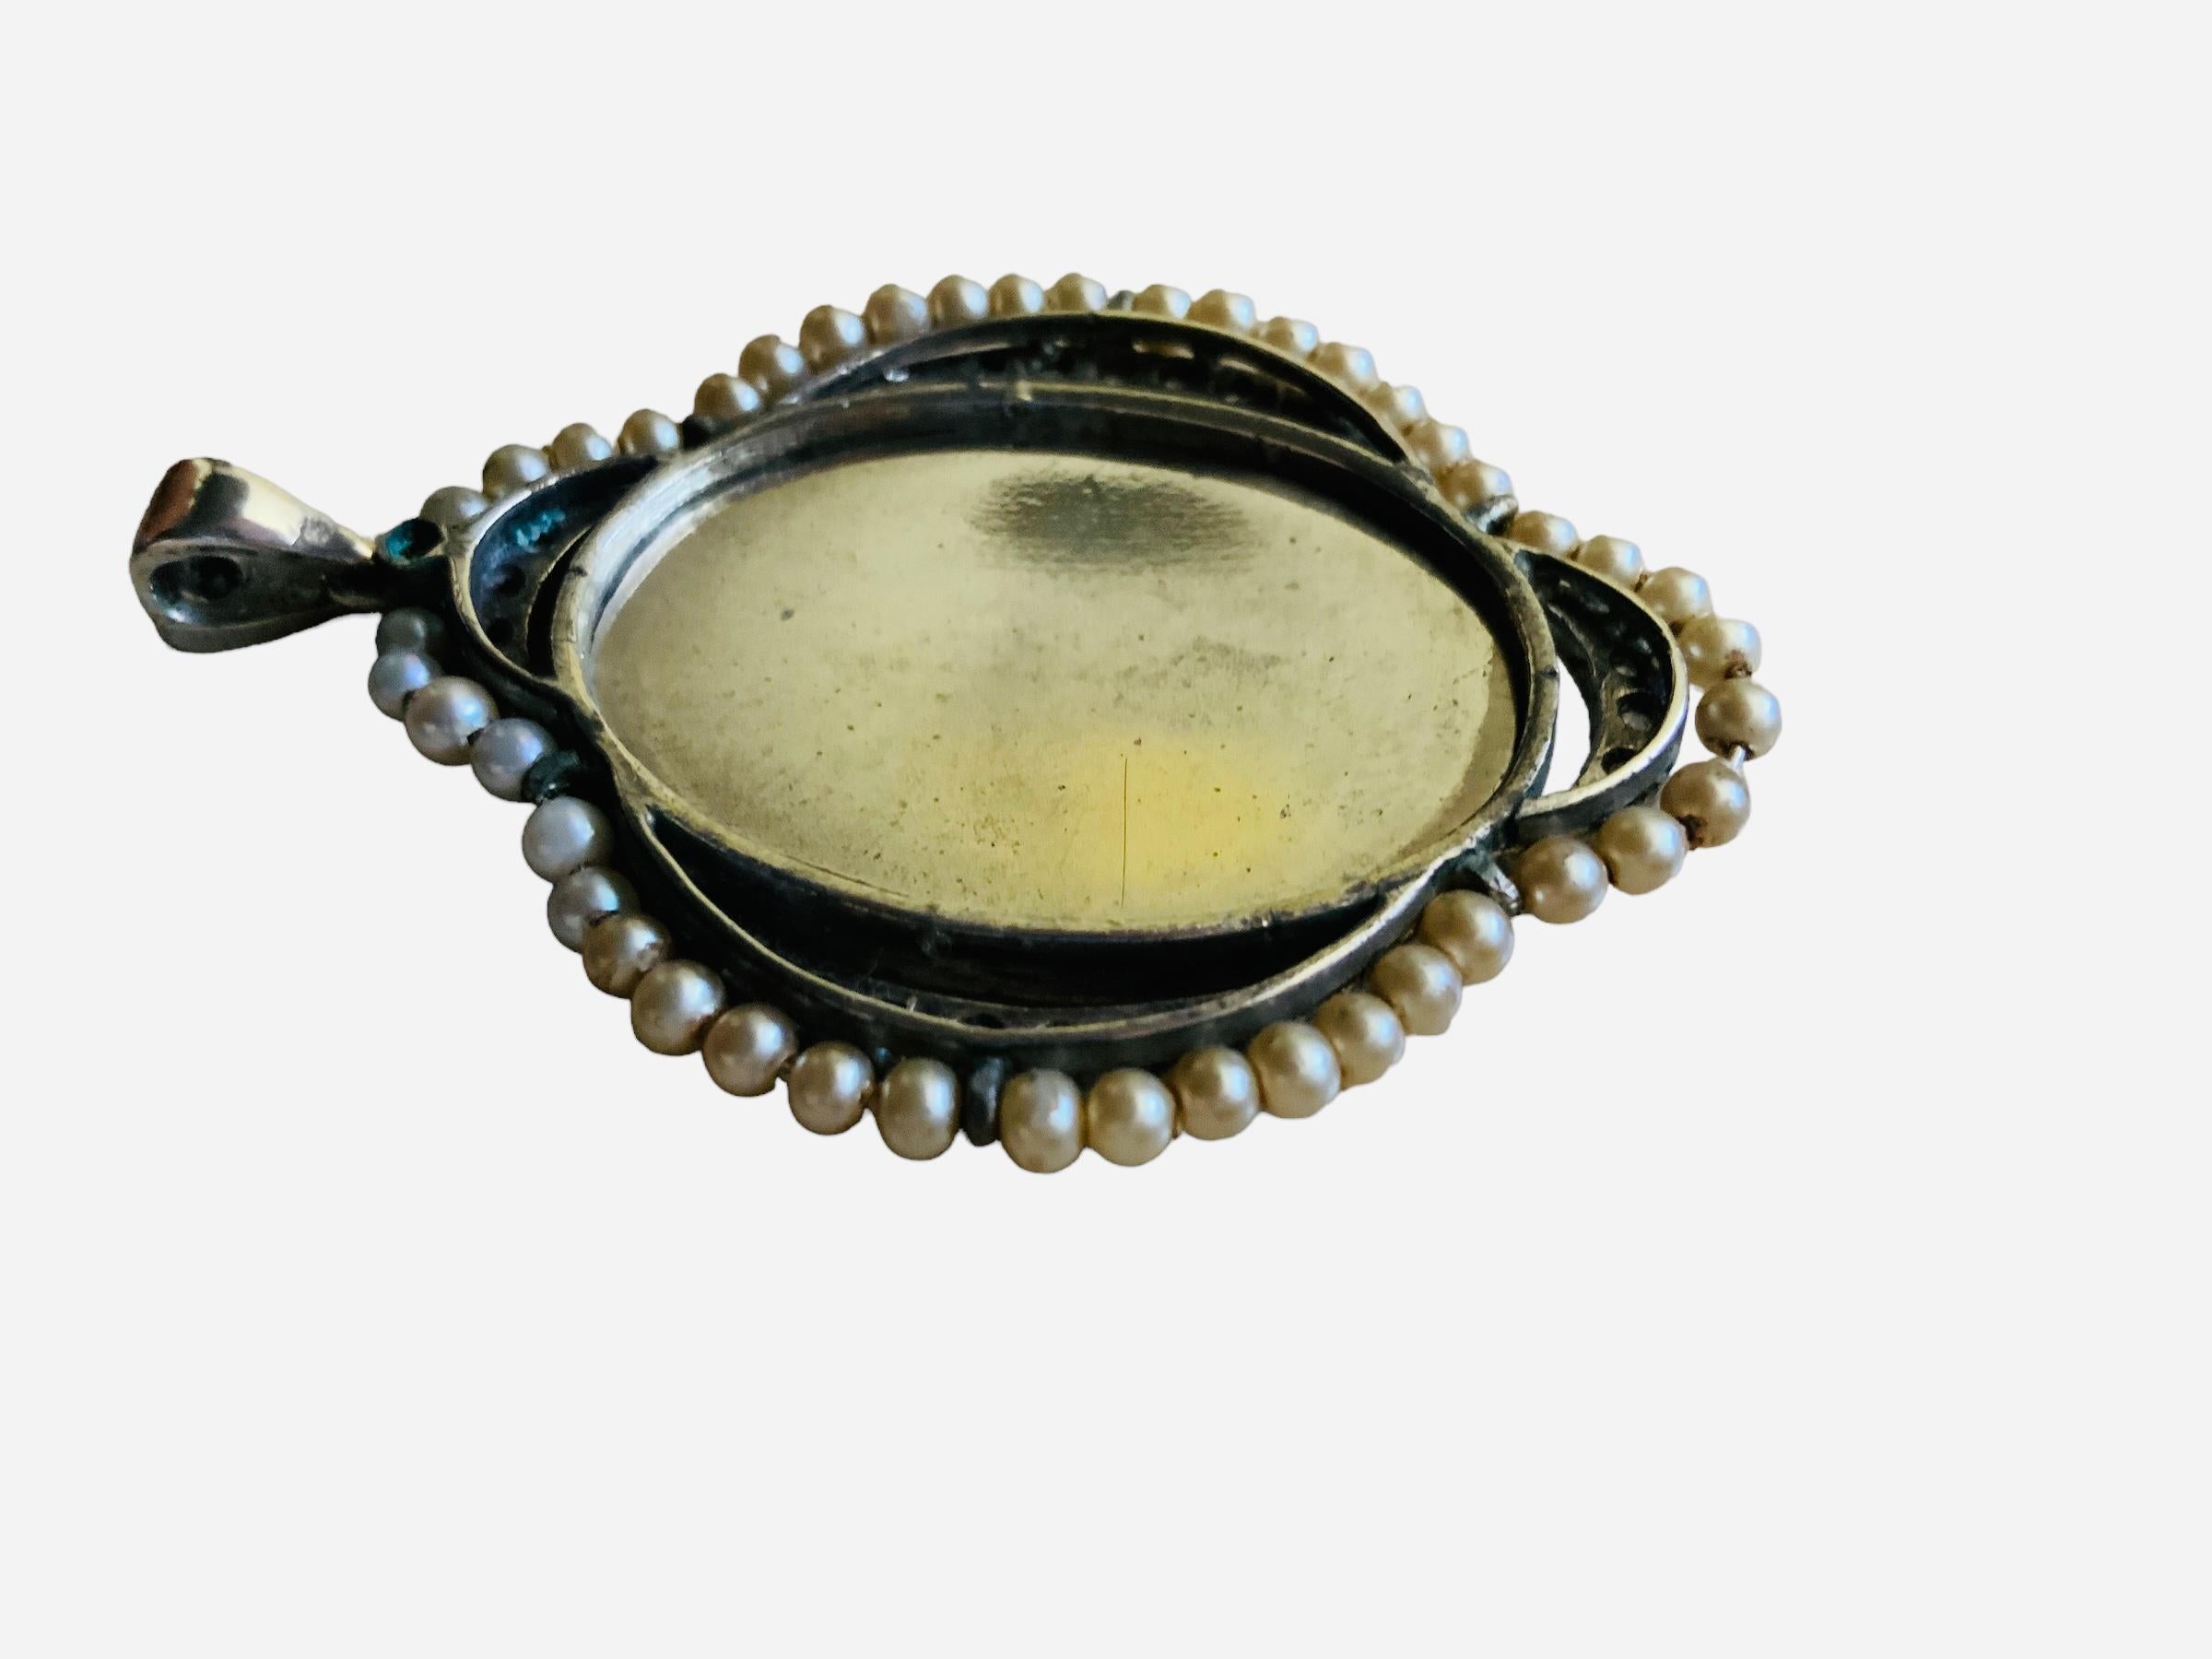 Il s'agit d'un pendentif religieux en argent avec des perles et des pierres claires. Il représente un boîtier ovale en verre argenté avec un portrait peint à la main de la Vierge Marie priant les mains jointes. L'extérieur du boîtier est orné d'une